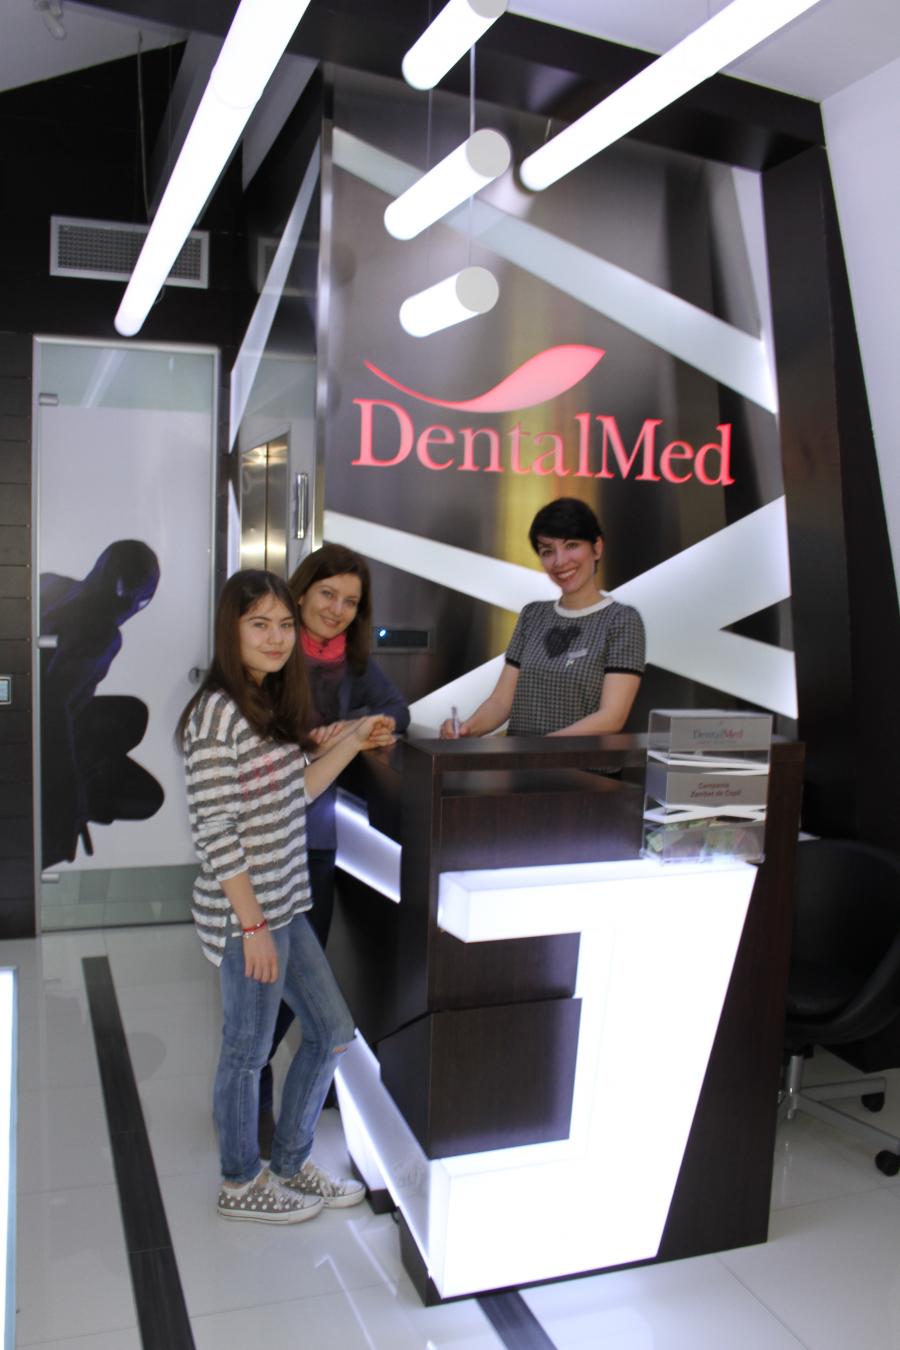 Poze%20DentalMed%2004.03.2014%20036 Imagini din clinica stomatologica DentalMed Luxury Marriott